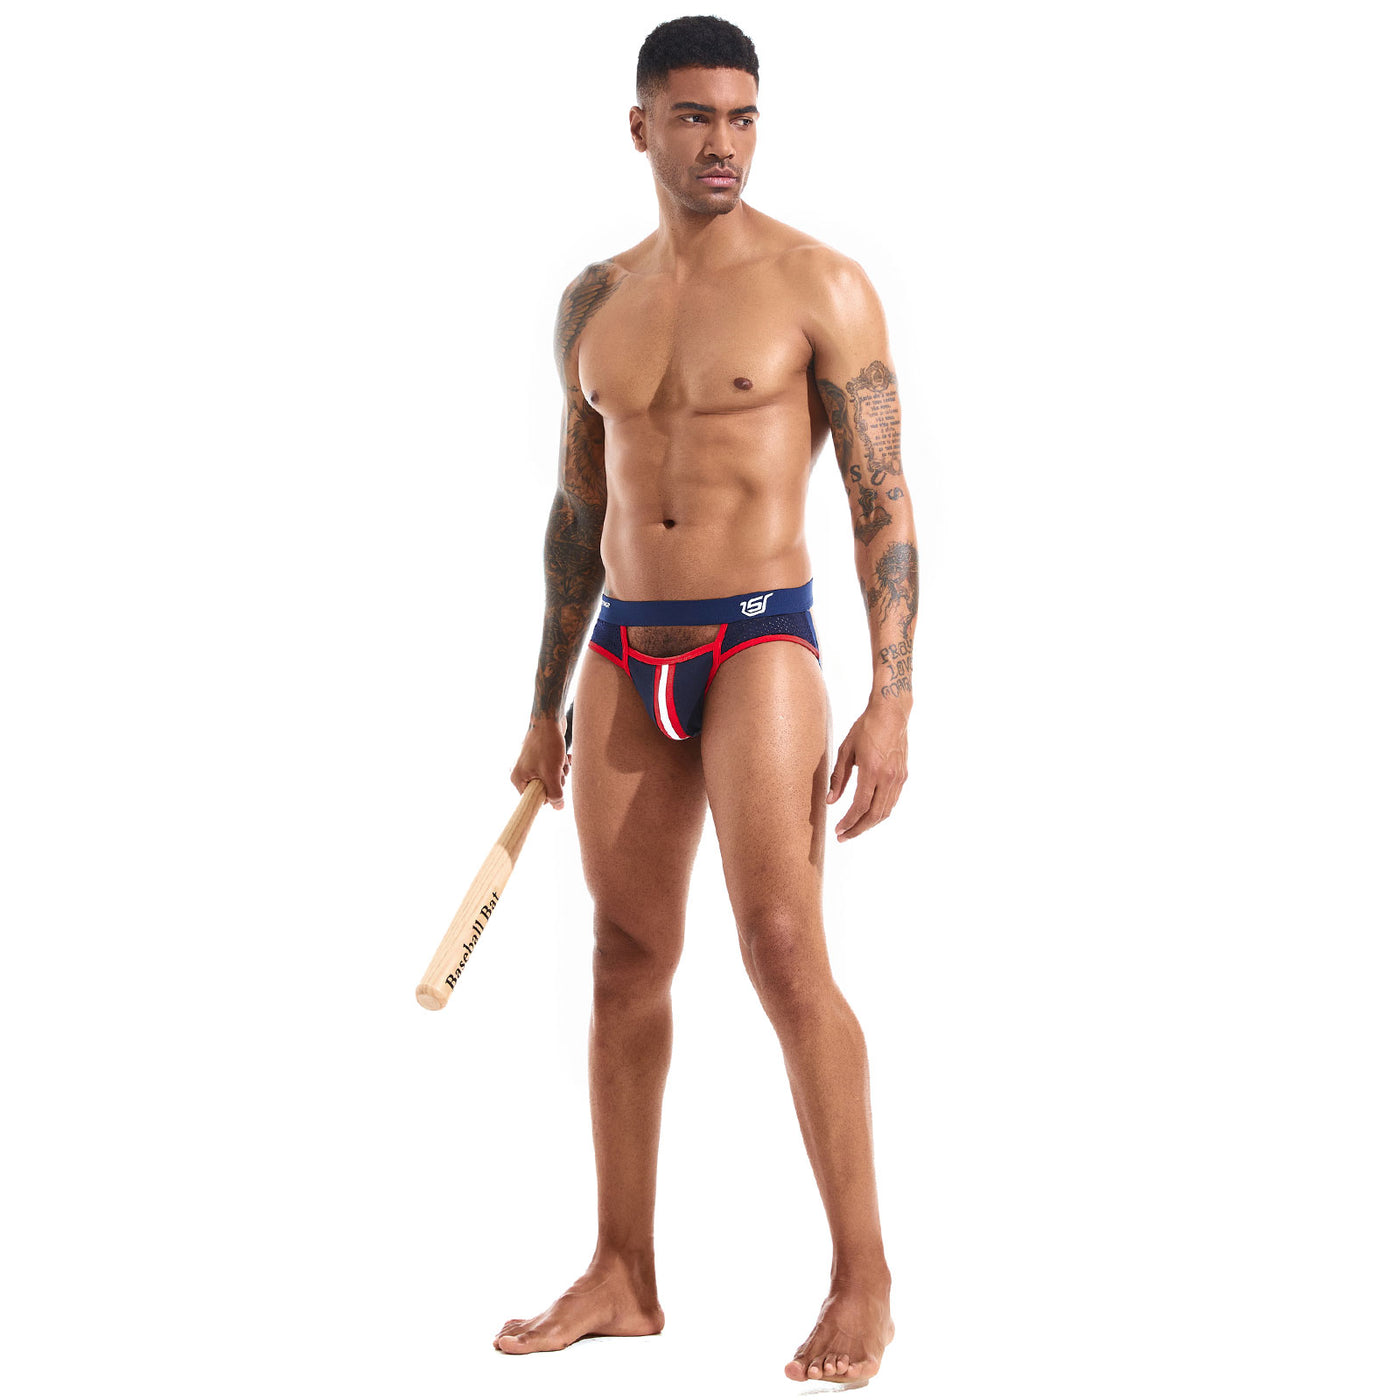 SKYSPER SG49 - Men's Jockstrap Underwear Athletic Supporter